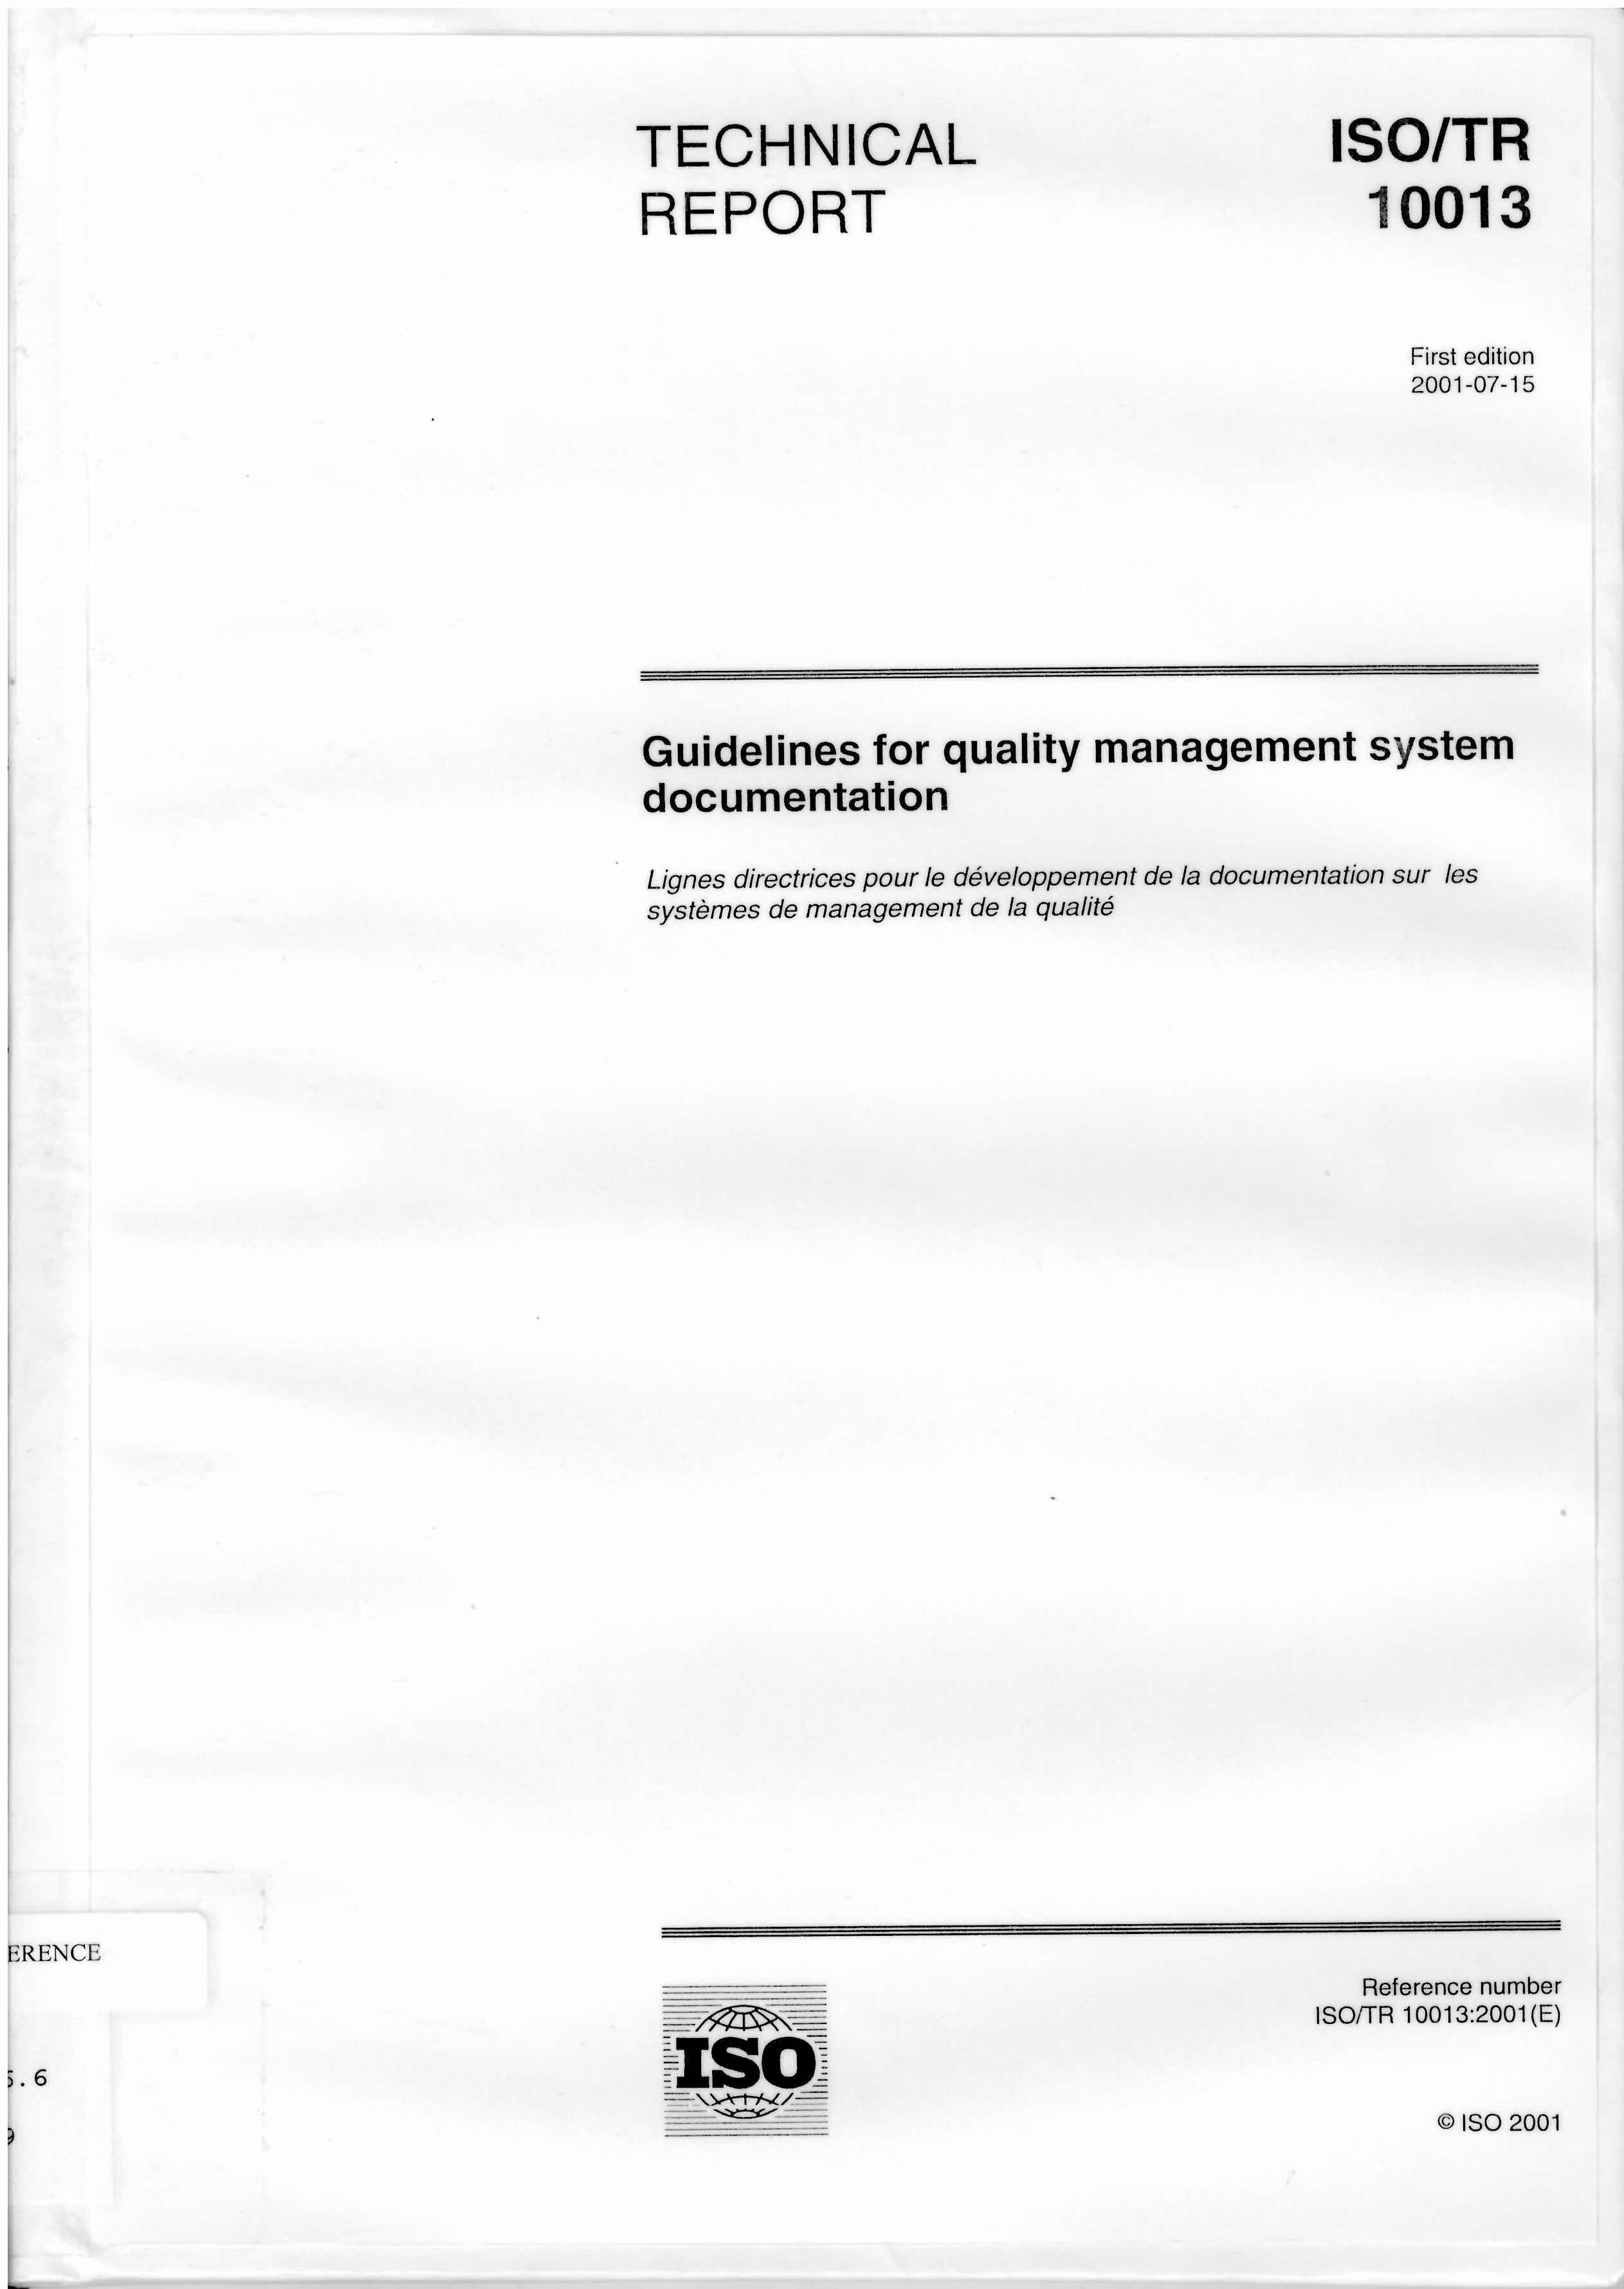 Guidelines for quality management system documentation = Lignes directrices pour le developpement de la documentation sur les systemes de management de la qualite